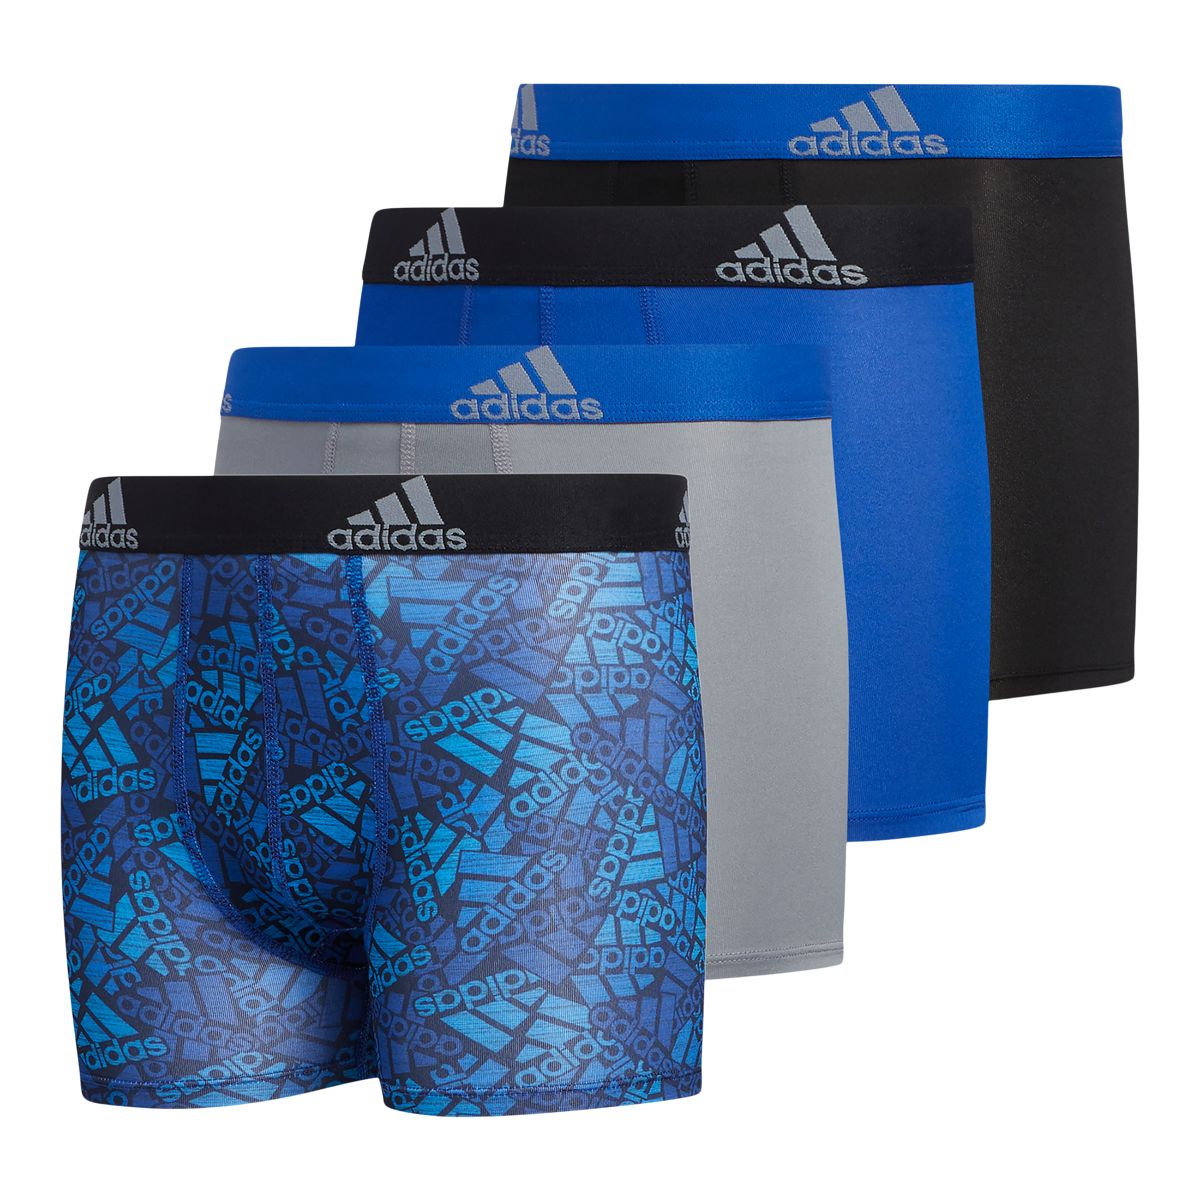 adidas Performance Boxer Brief Underwear 1-Pack